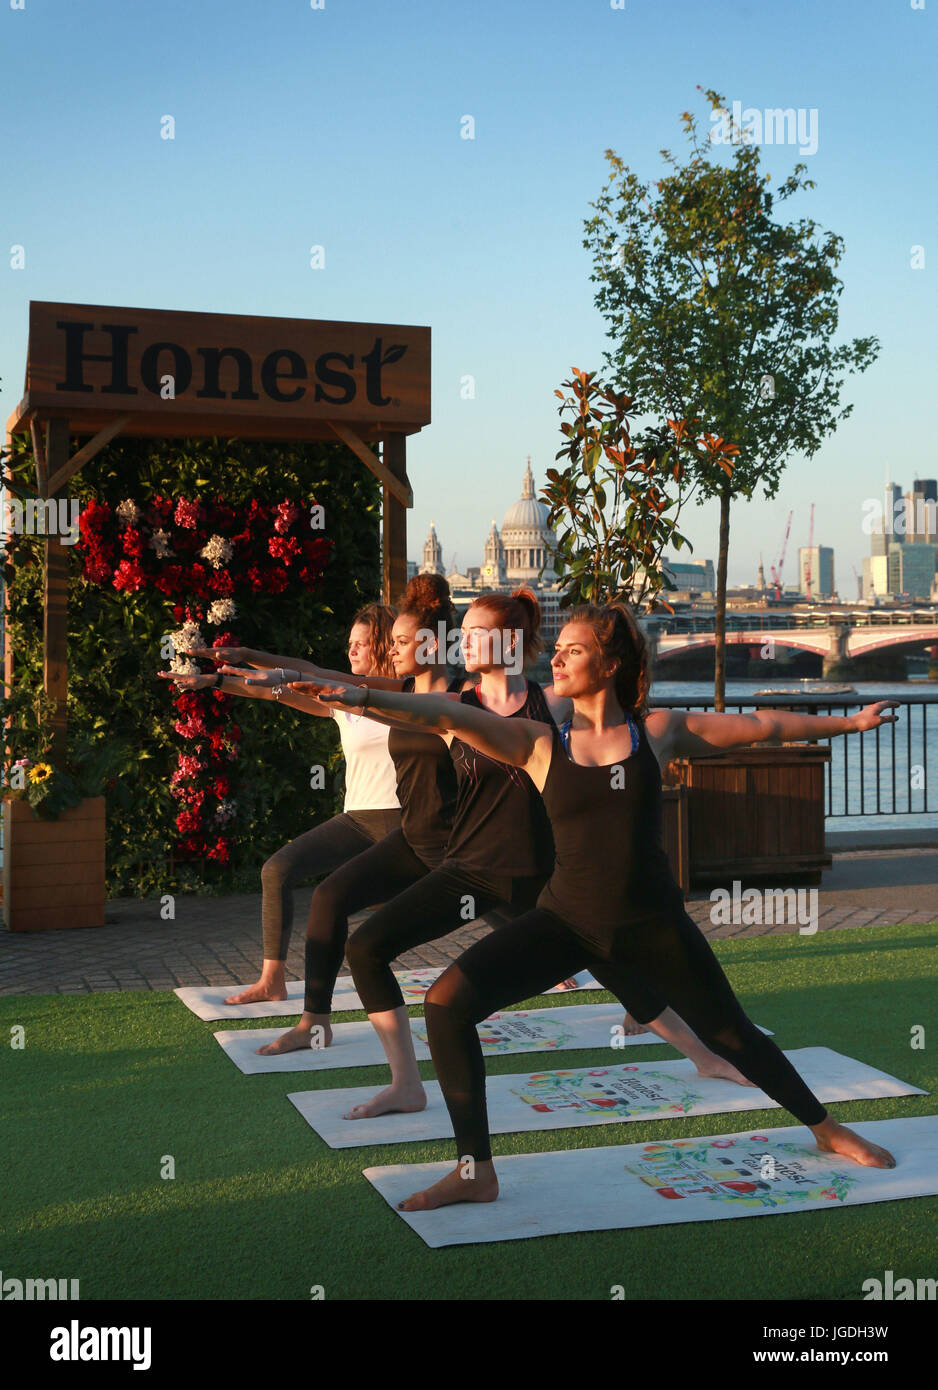 (De gauche à droite) Jemma Stephens de Londres, Emma Cagill de Londres, Laura Beech de Birmingham et Danni Hill de Middlesbrough participent à un cours de yoga dans un jardin pop-up sur la rive sud de Londres pour le lancement de Honest, la marque de boissons biologiques, ouvert jusqu'au samedi 8 juillet. Banque D'Images